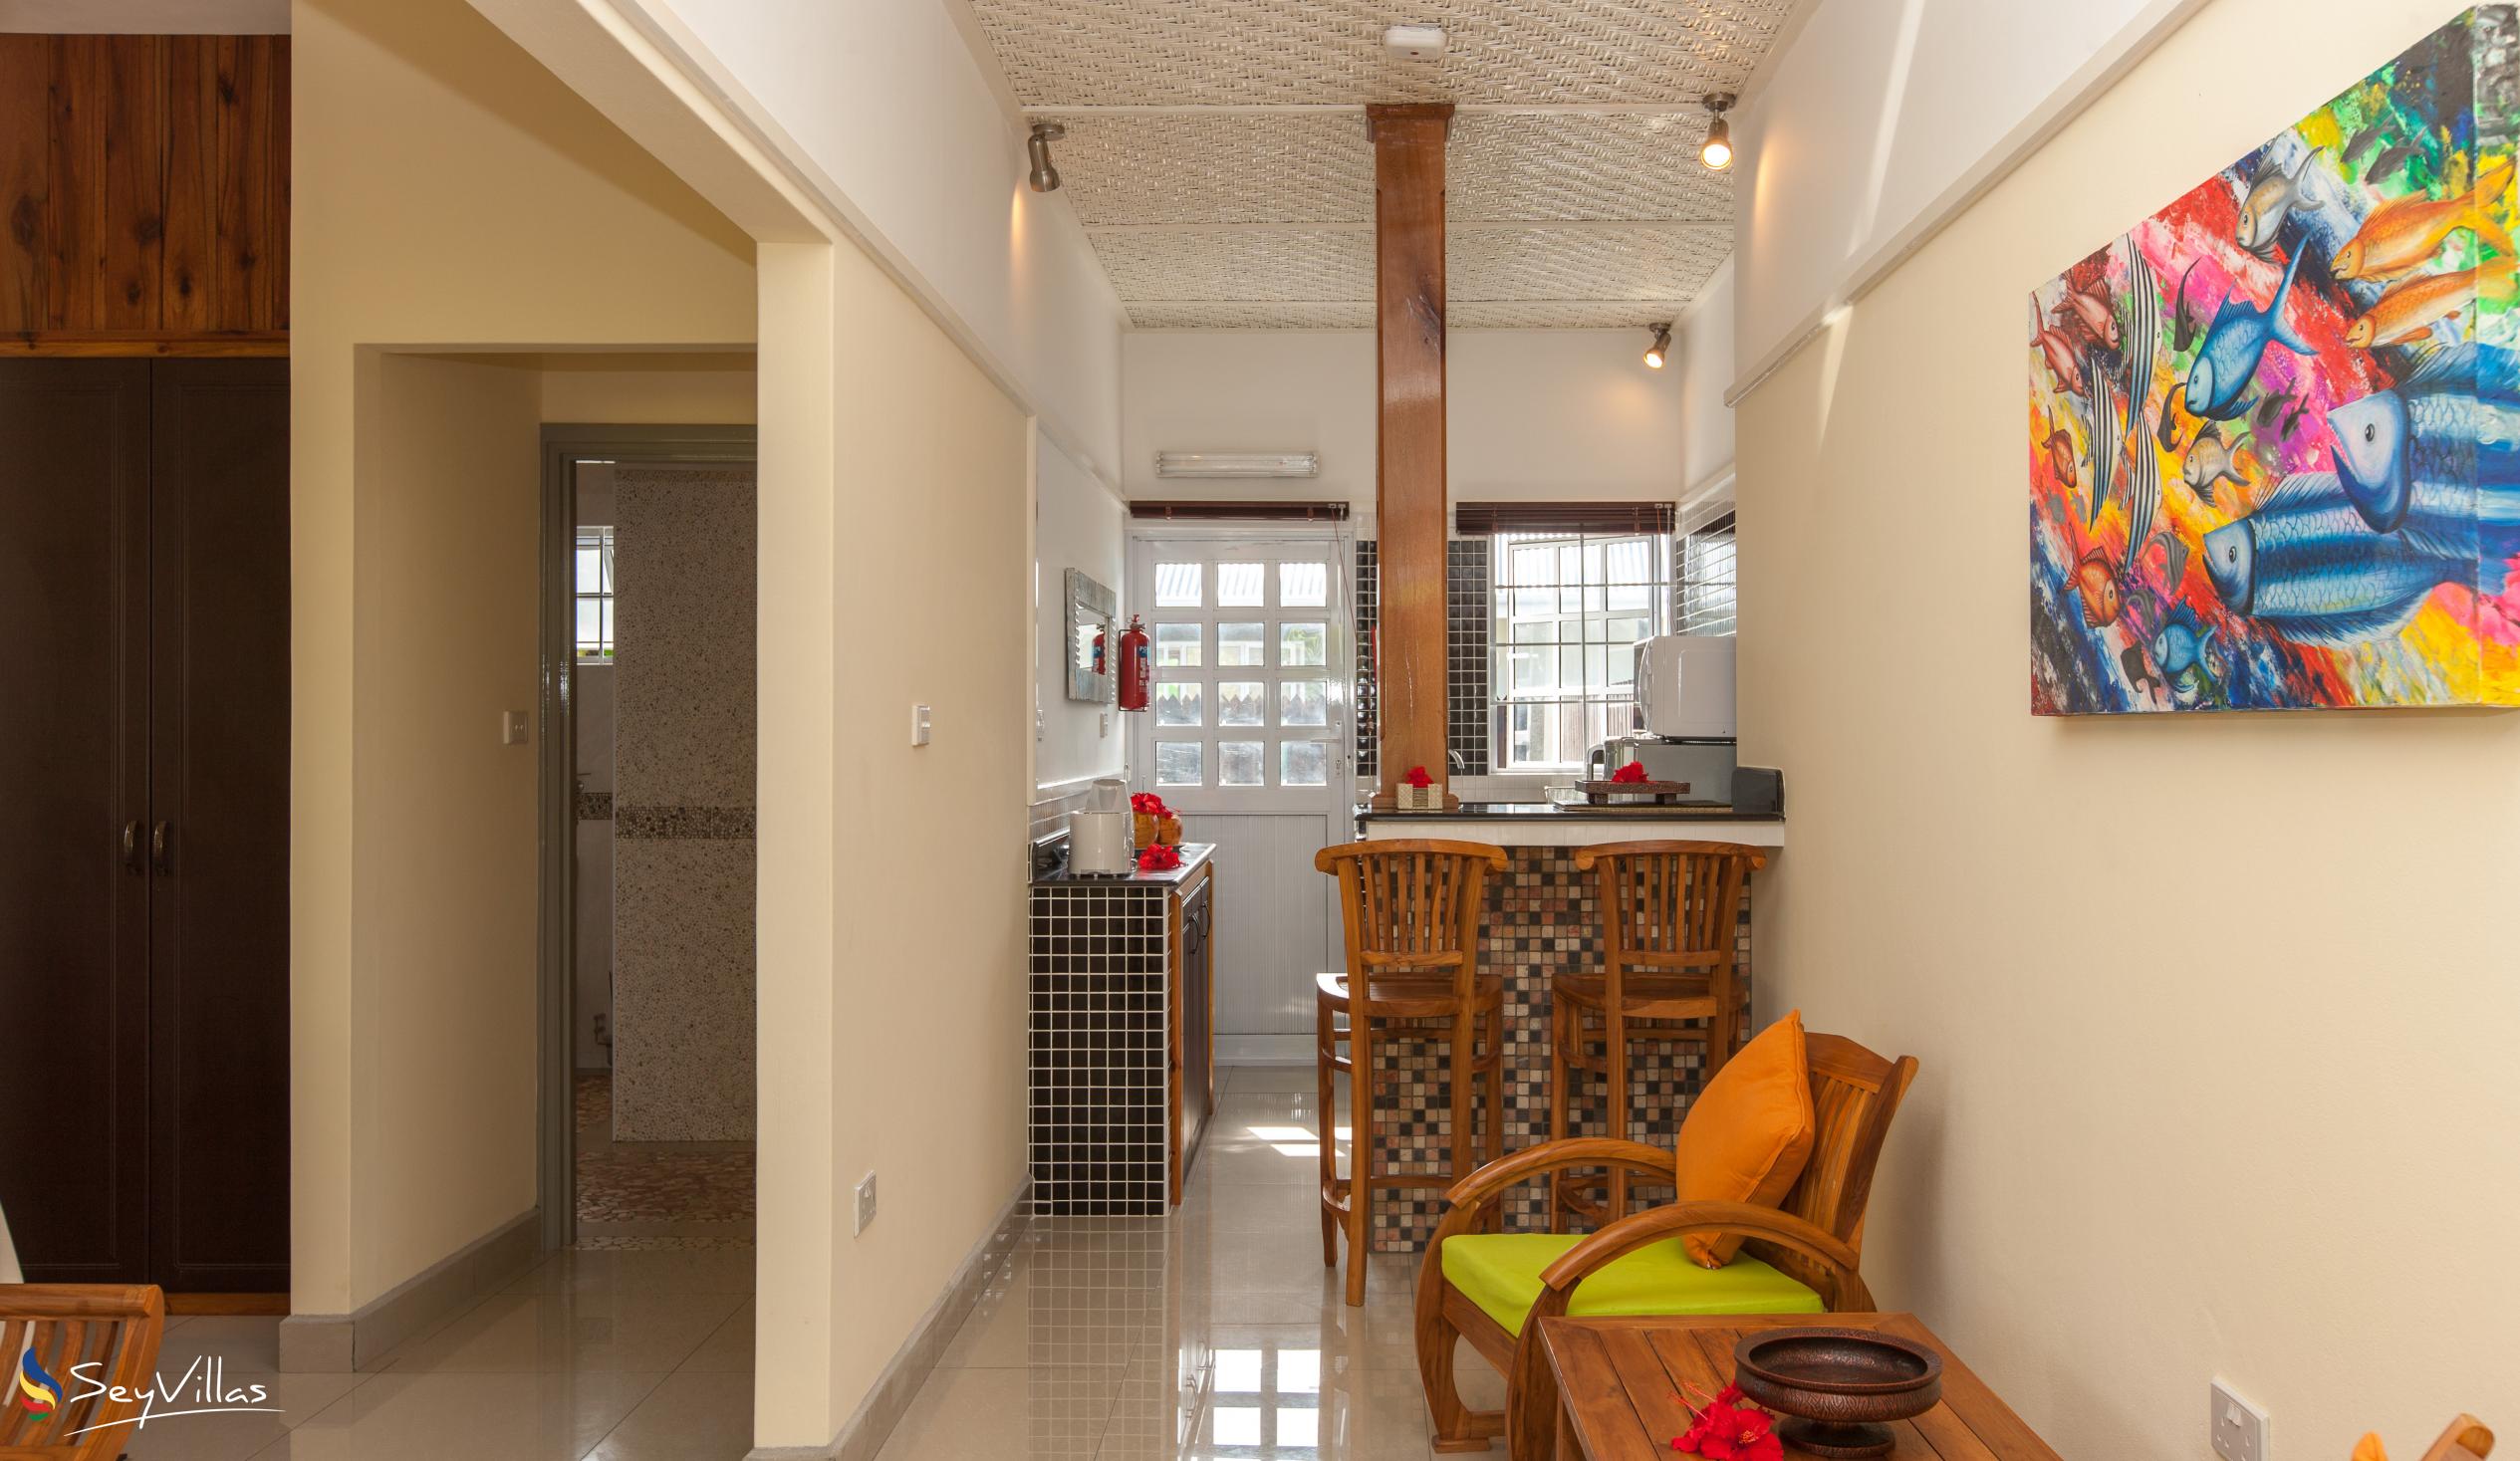 Foto 13: Maison Charme De L'ile - Garden View Apartment - La Digue (Seychellen)